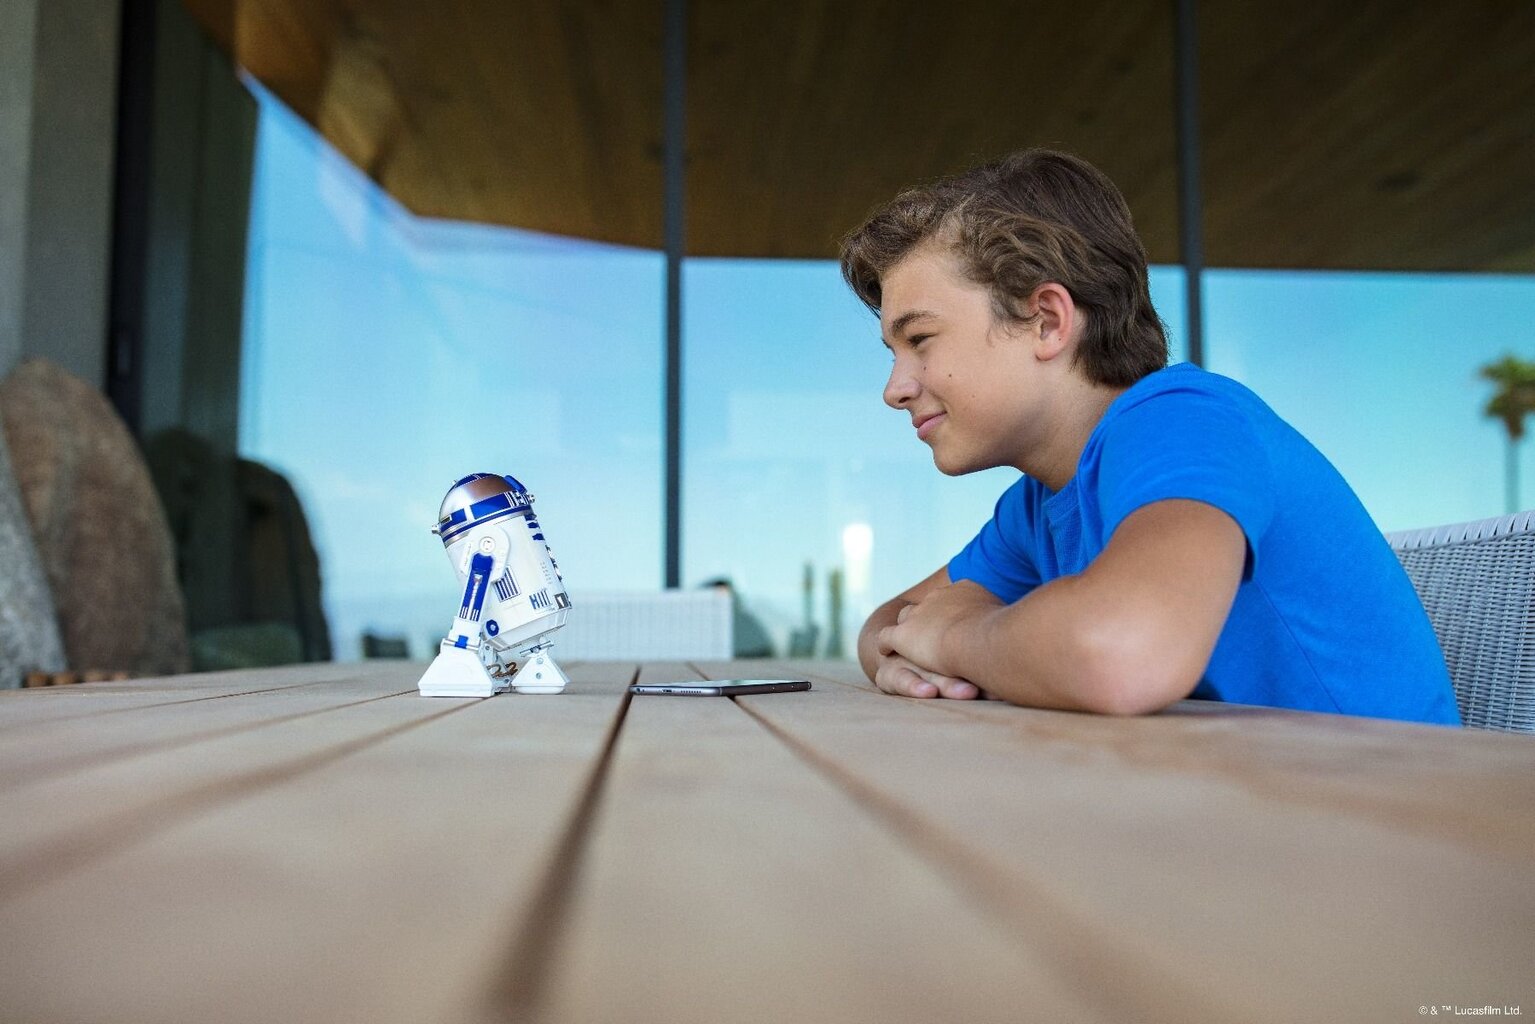 Interaktyvus droidas Sphero Star Wars - R2-D2 kaina ir informacija | Išmanioji technika ir priedai | pigu.lt